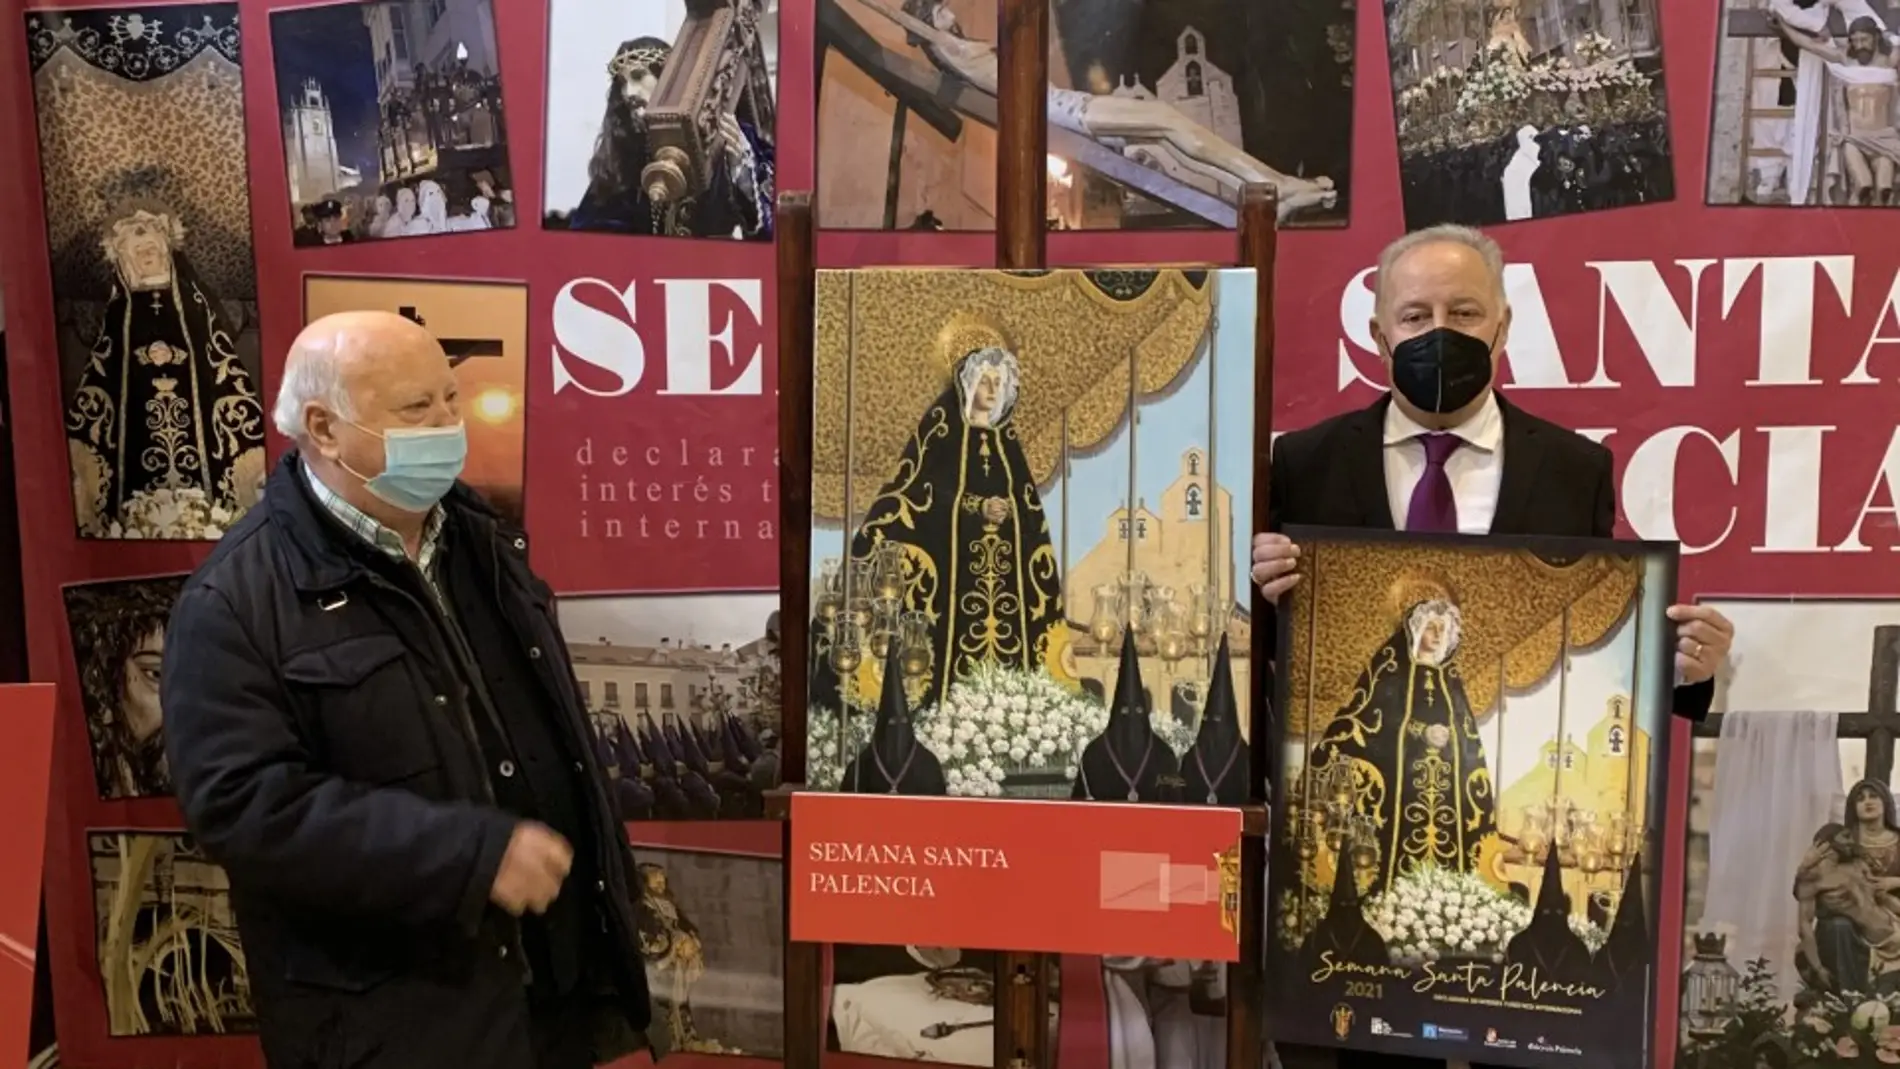 La Virgen de la Soledad iliustra el cartel de la Semana Santa de Palencia